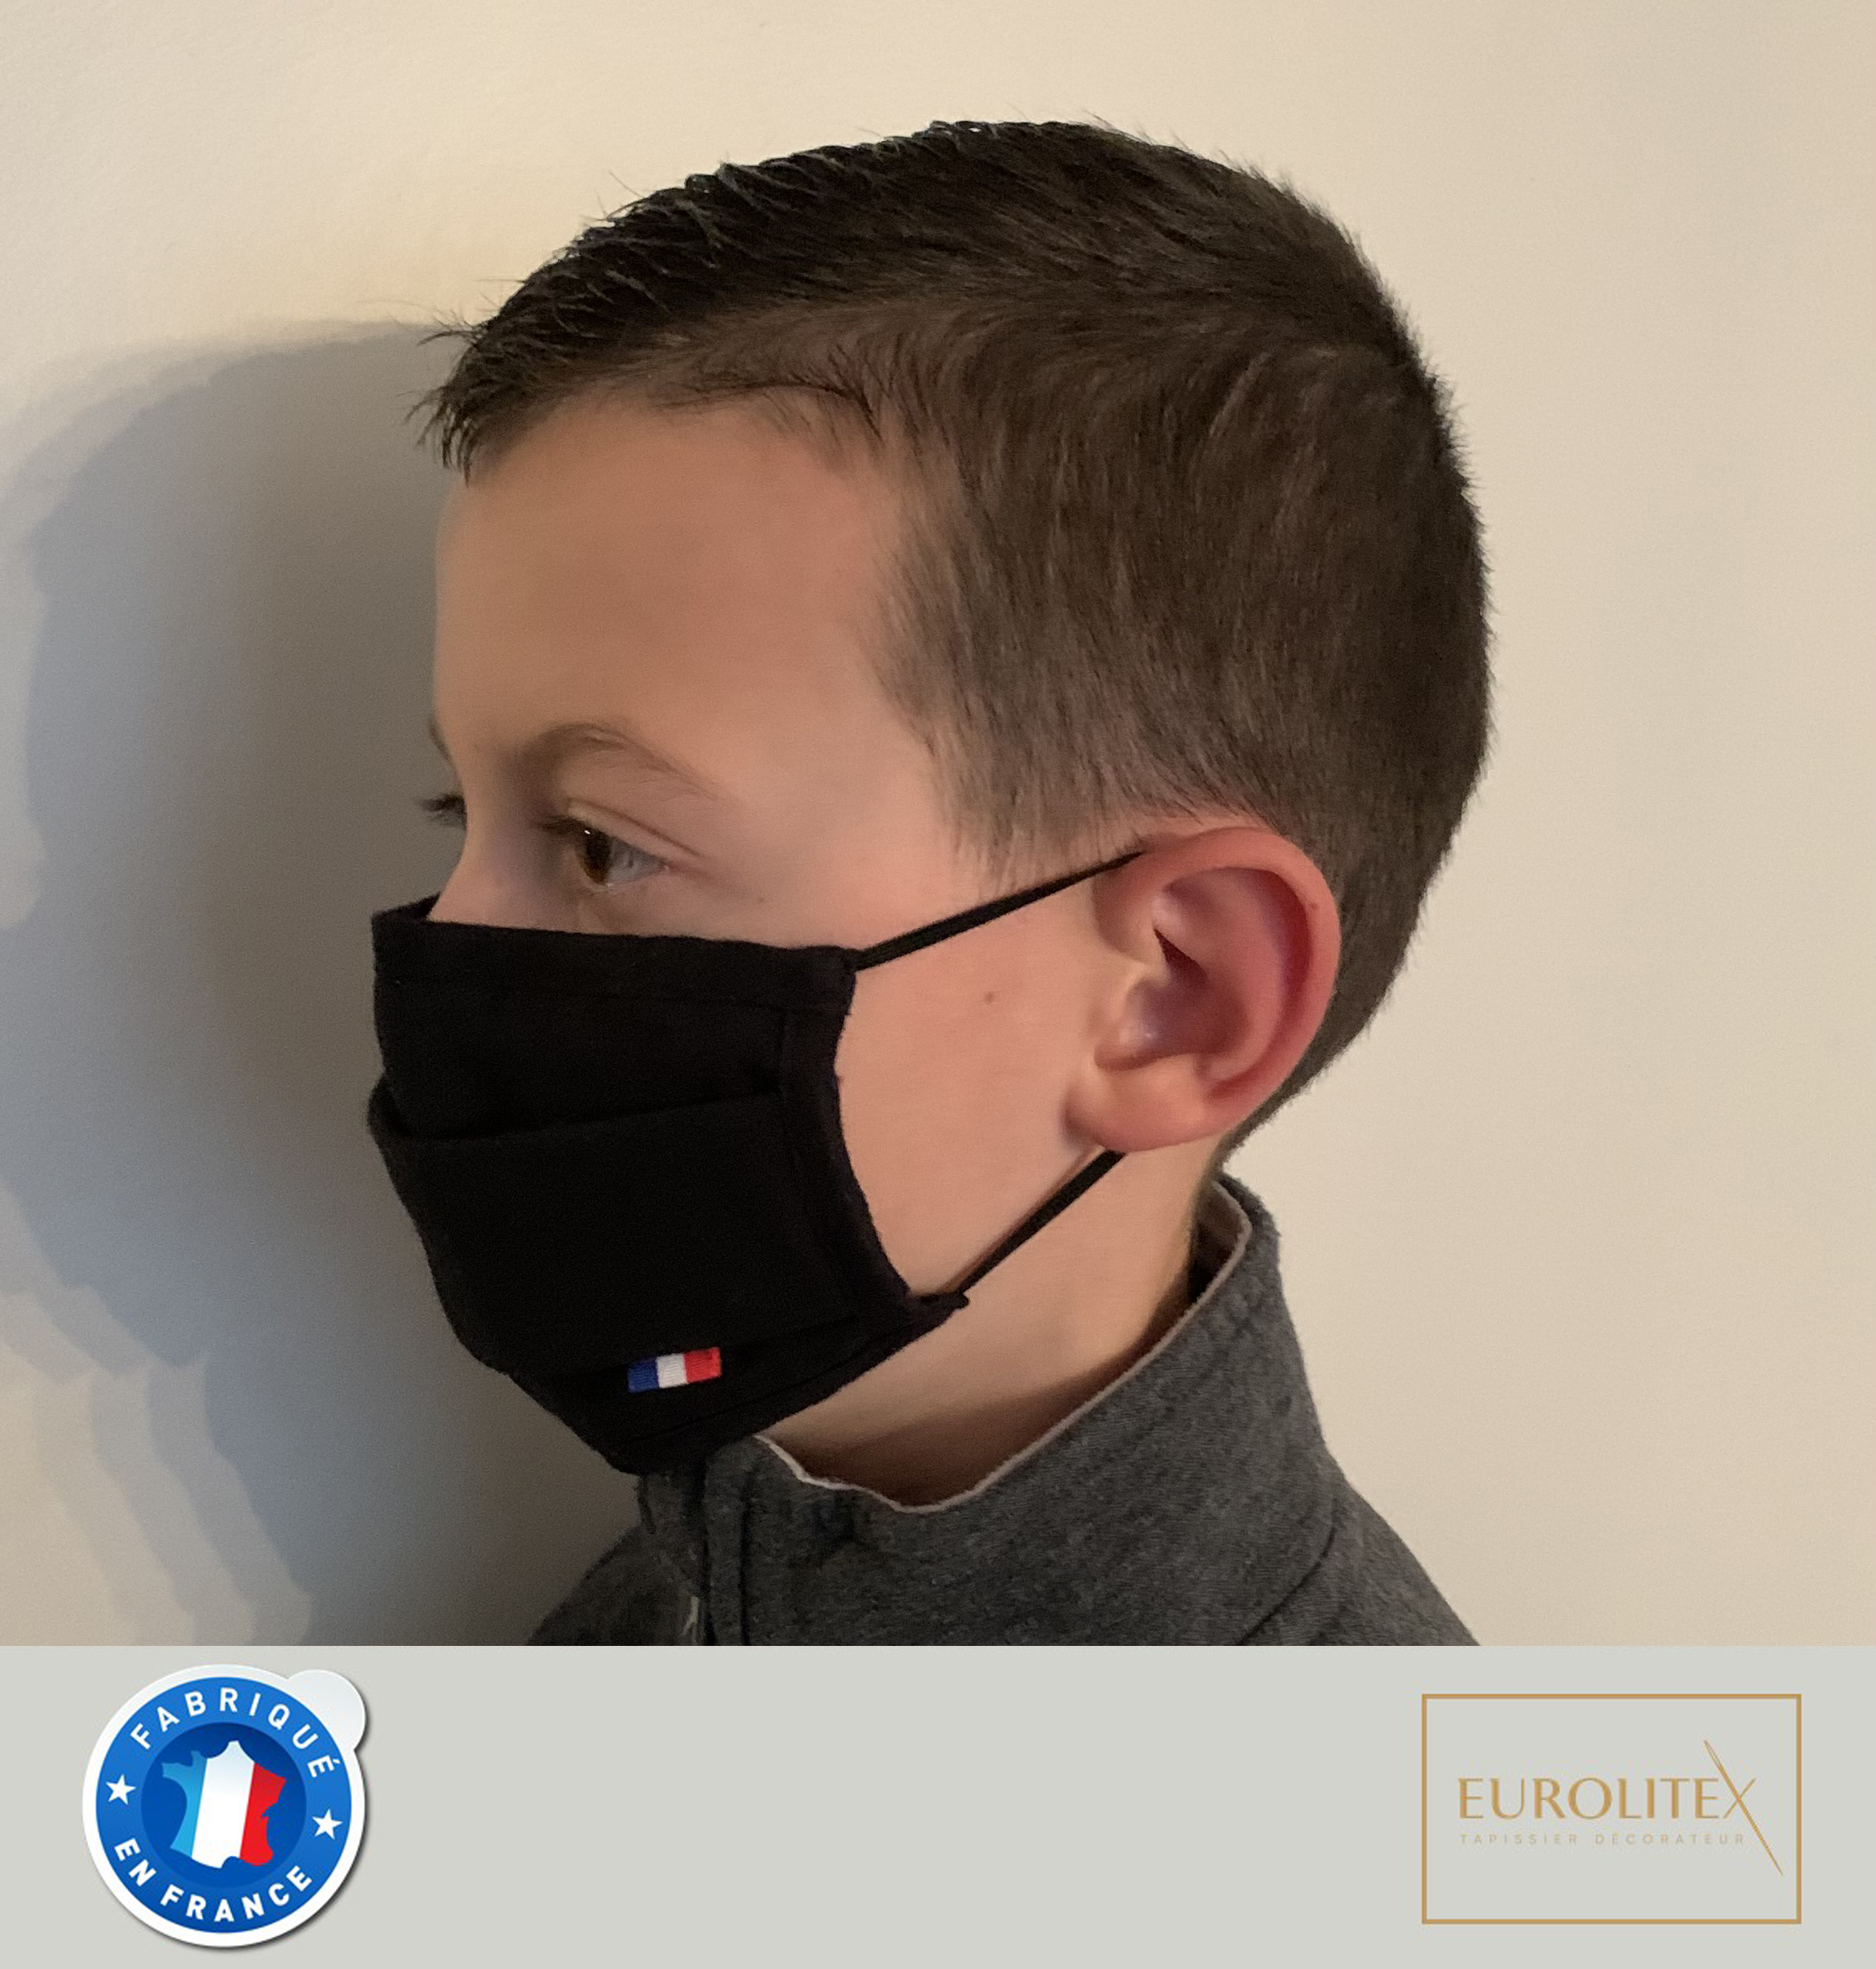 Masque 3 plis avec barrette nasale - modèle enfant (8-12ans)